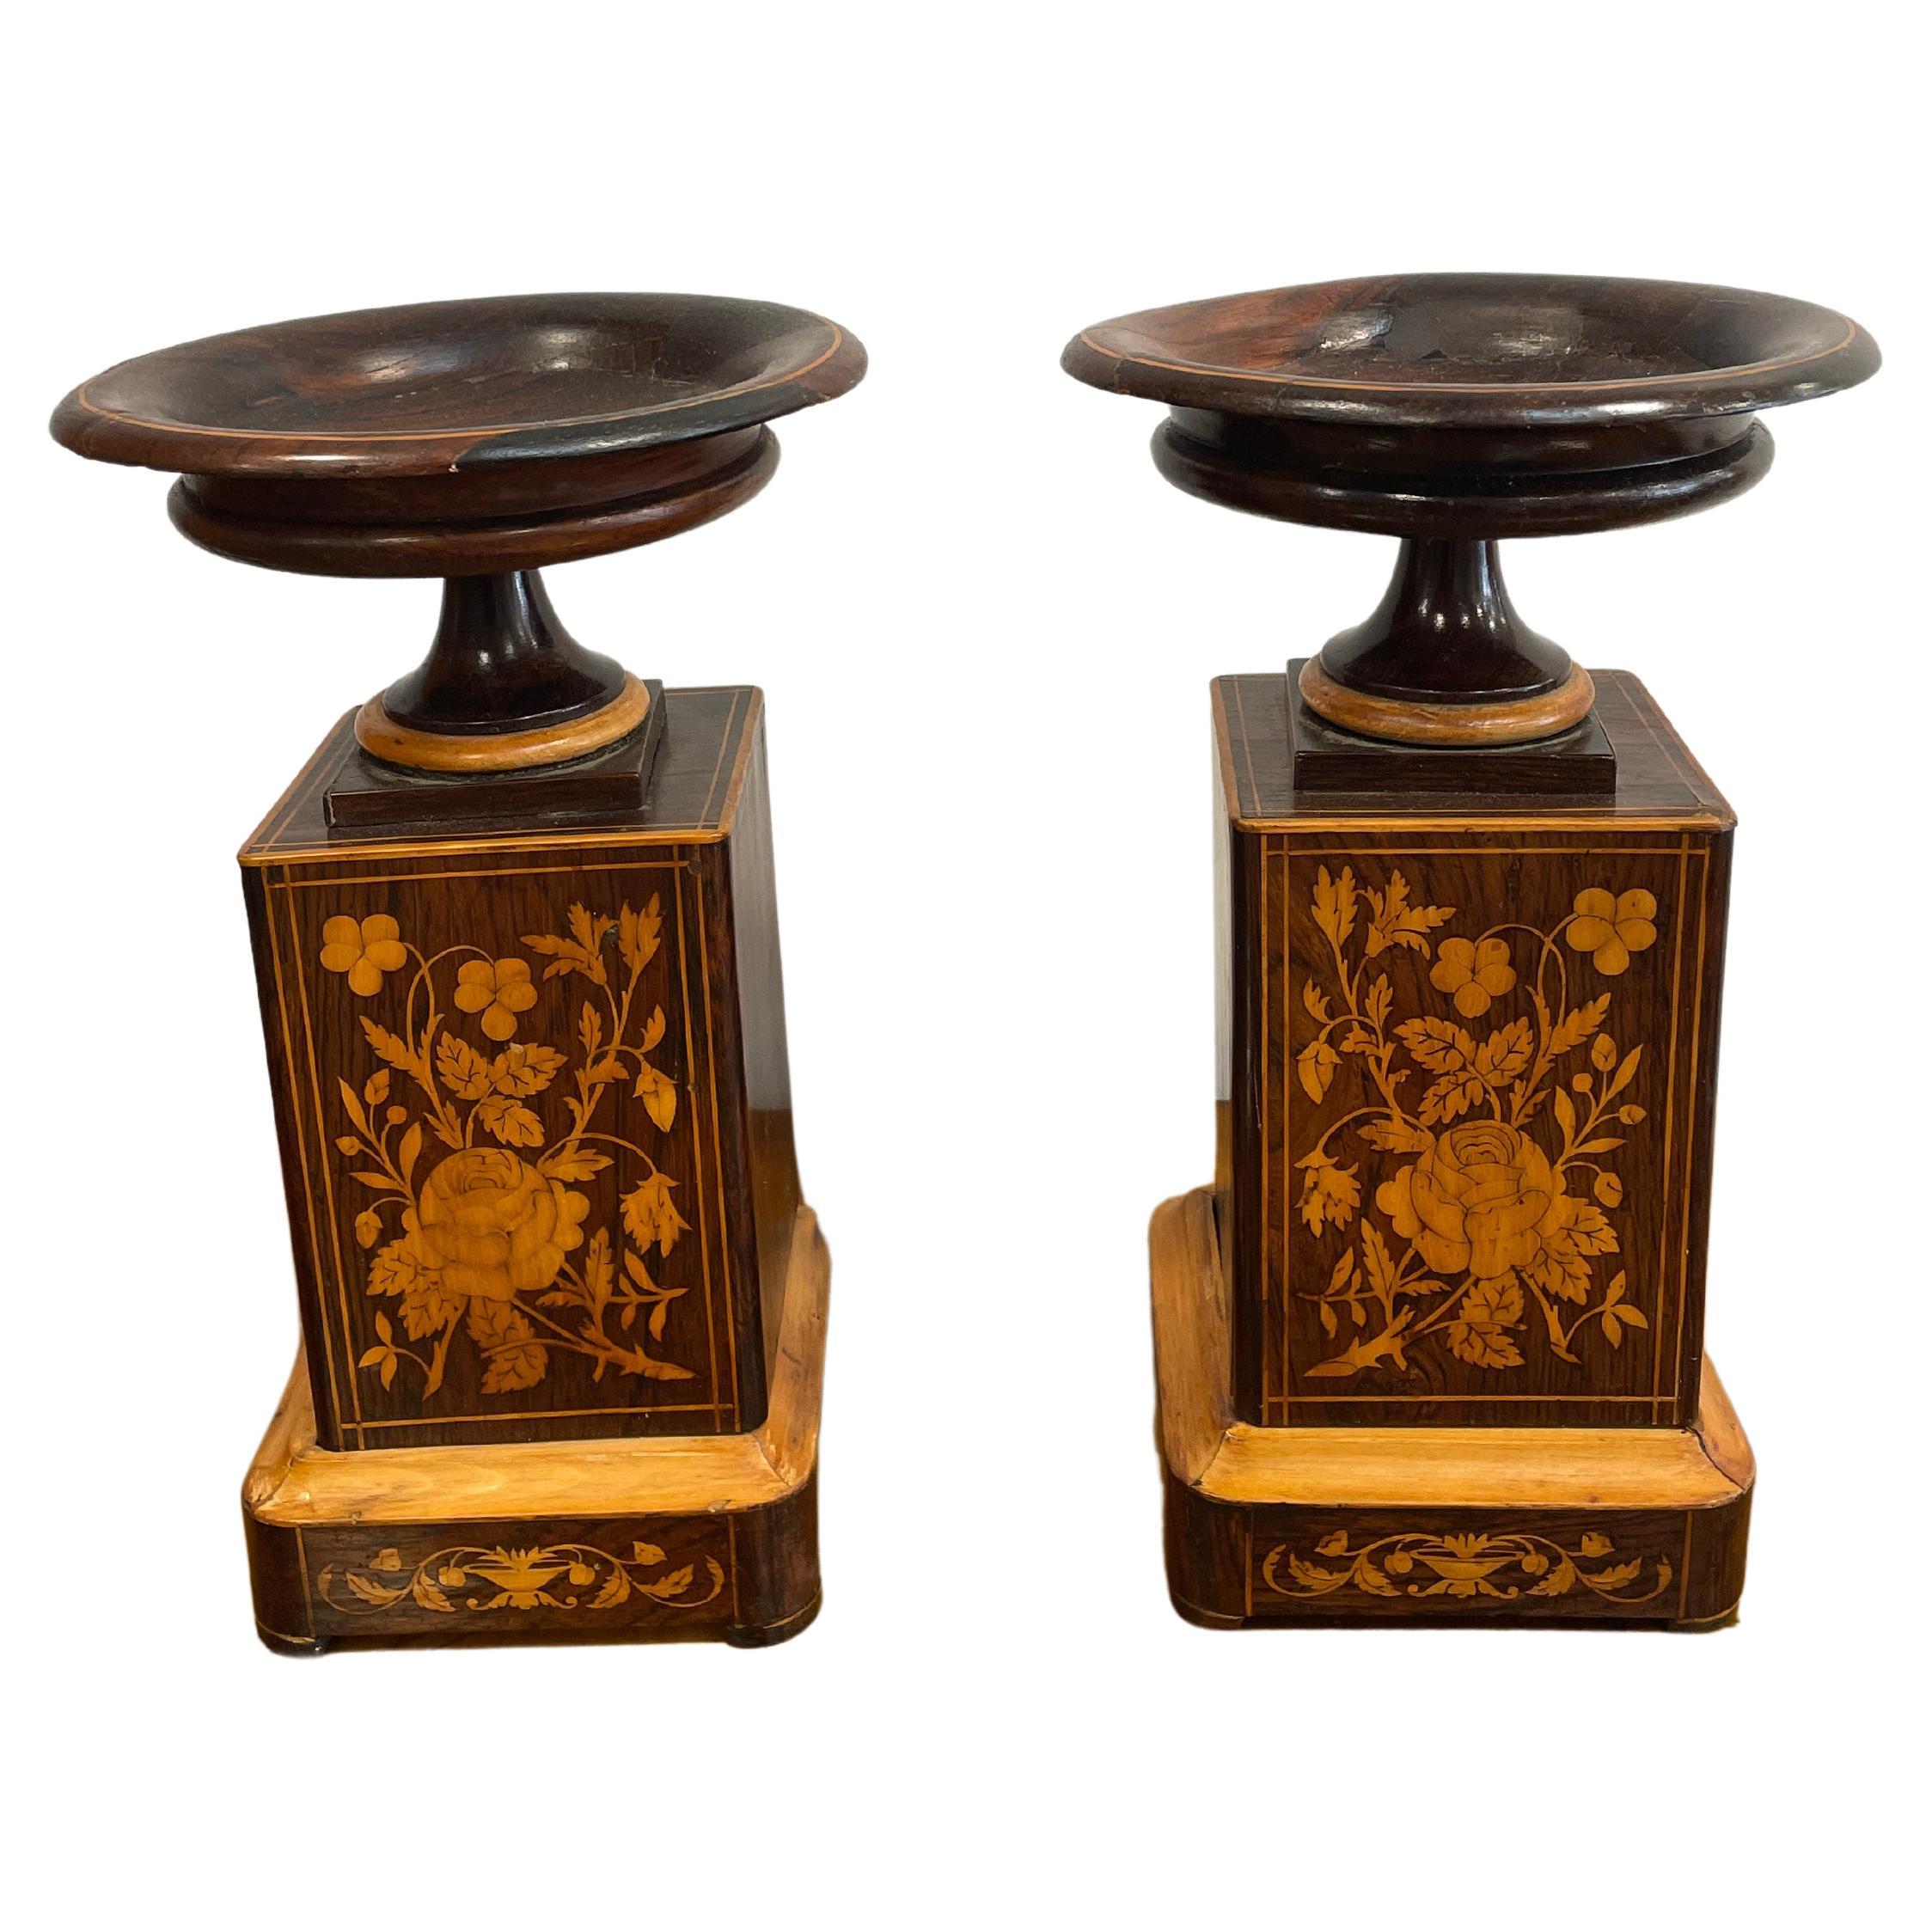 Découvrez ces exquis vases anciens français de 1830, conçus pour accompagner une horloge de cheminée. Fabriqués en placage d'acajou et ornés d'une étonnante marqueterie de fleurs d'érable sur le devant, ces vases en bois émanent d'une élégance